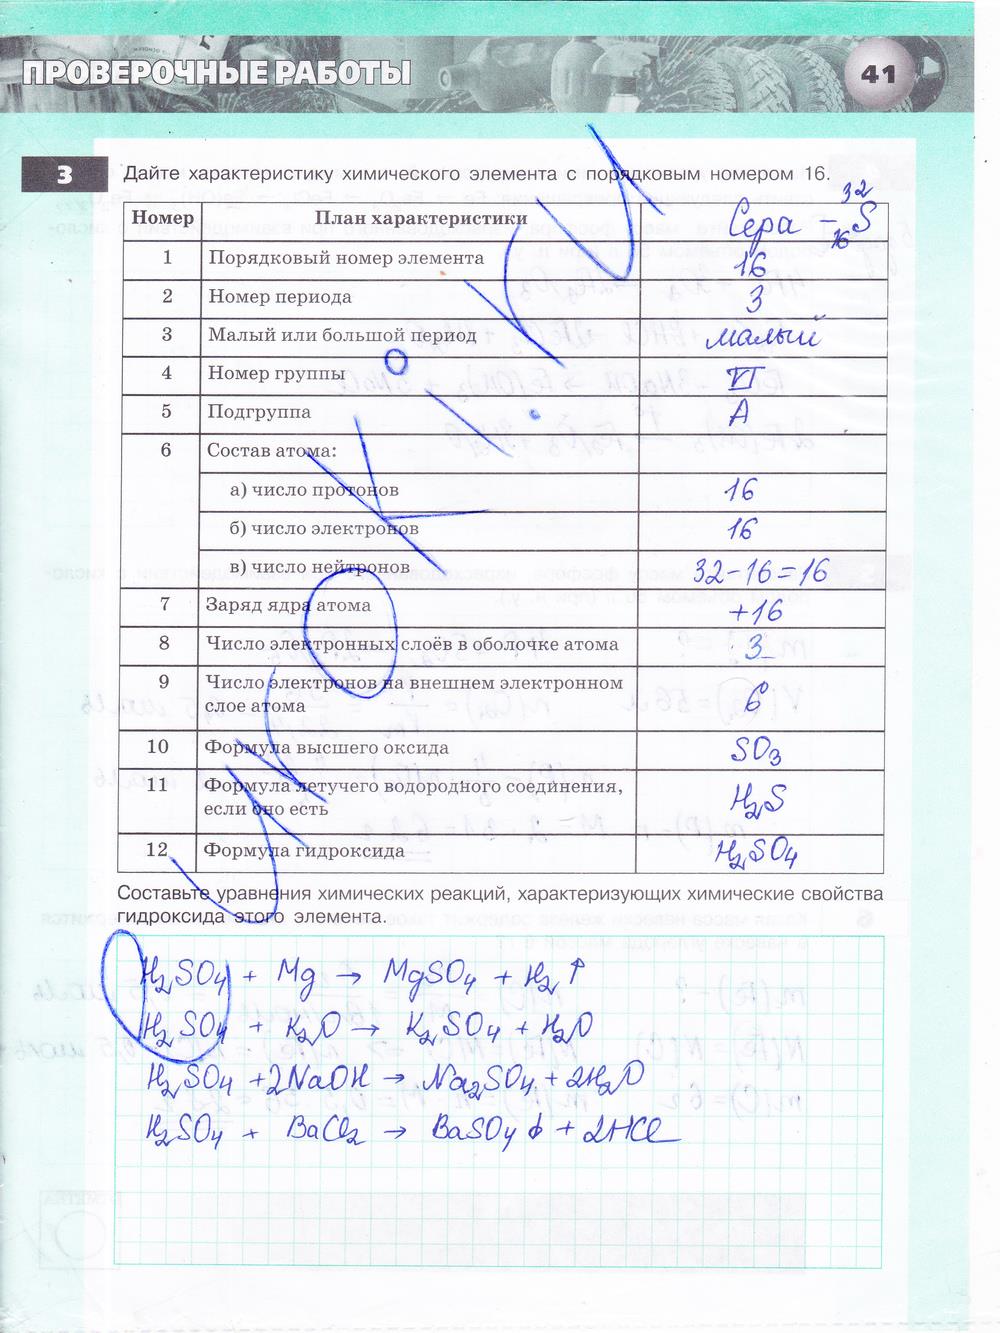 гдз 8 класс тетрадь-экзаменатор страница 41 химия Бобылева, Бирюлина